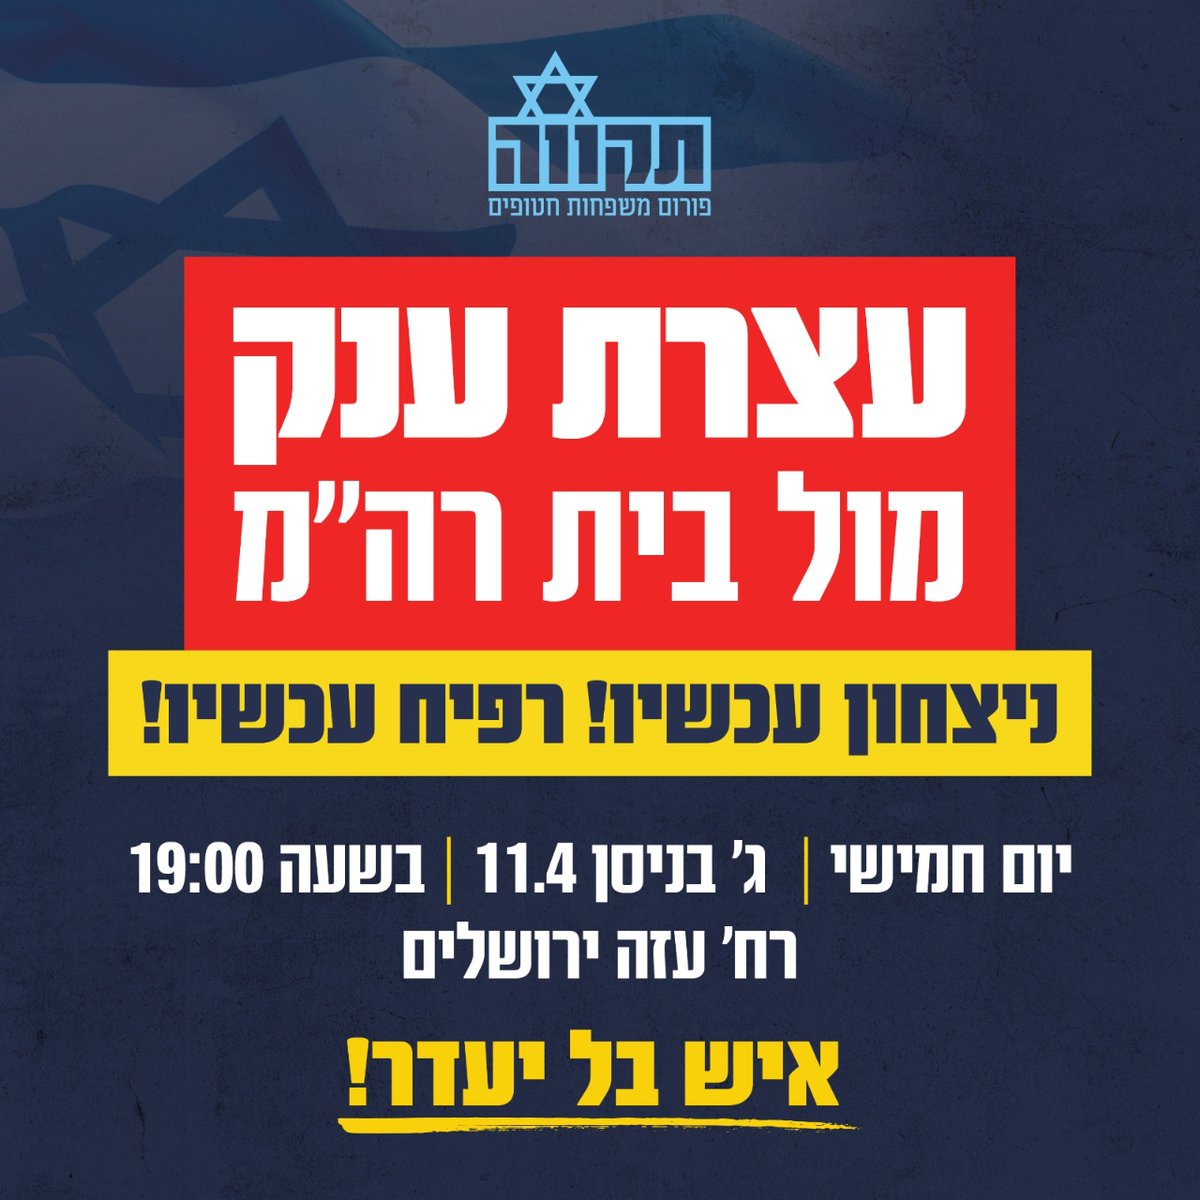 הערב, יום חמישי, בשעה 19:00 ברח' עזה בירושלים. בואו לעמוד לצד משפחות חטופים בקריאה לניצחון. הפיצו.